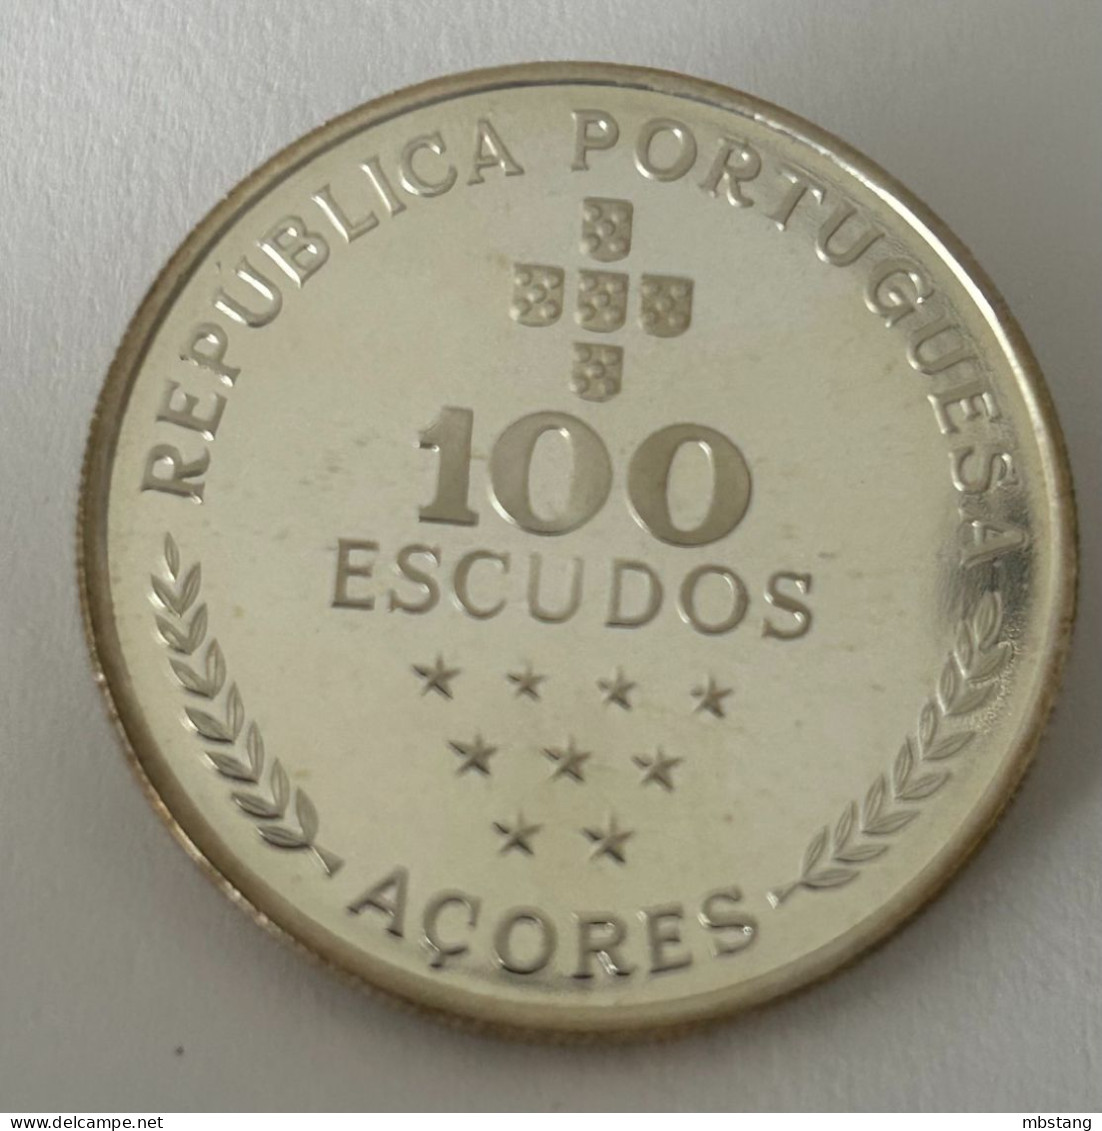 AZORES 100 Escudos (Azores Regional Autonomy; Silver) 1980 (.925) • 16.5 G •  34 Mm KM# 44a - Azoren